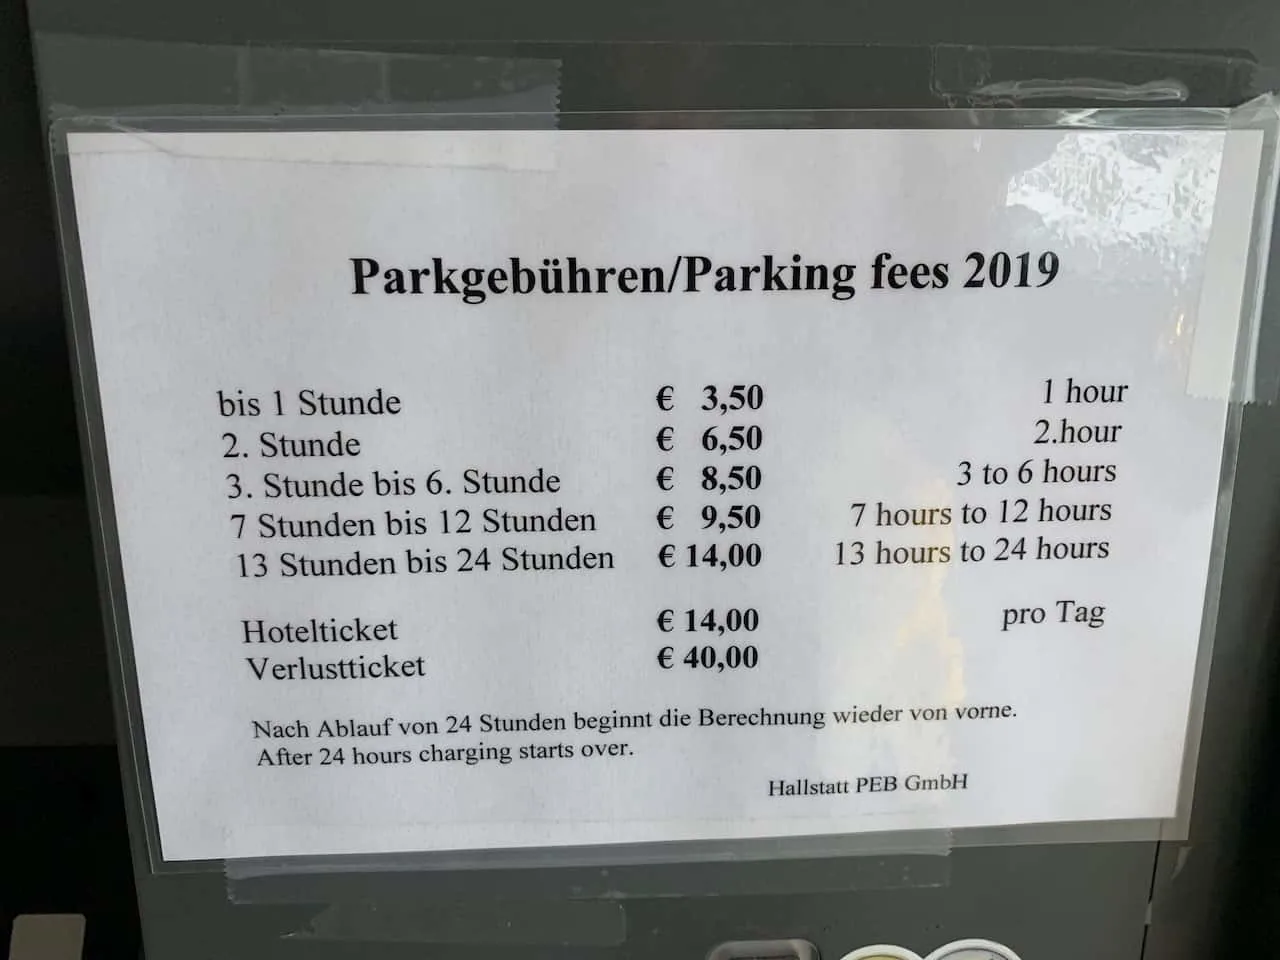 Hallstatt Parking Prices